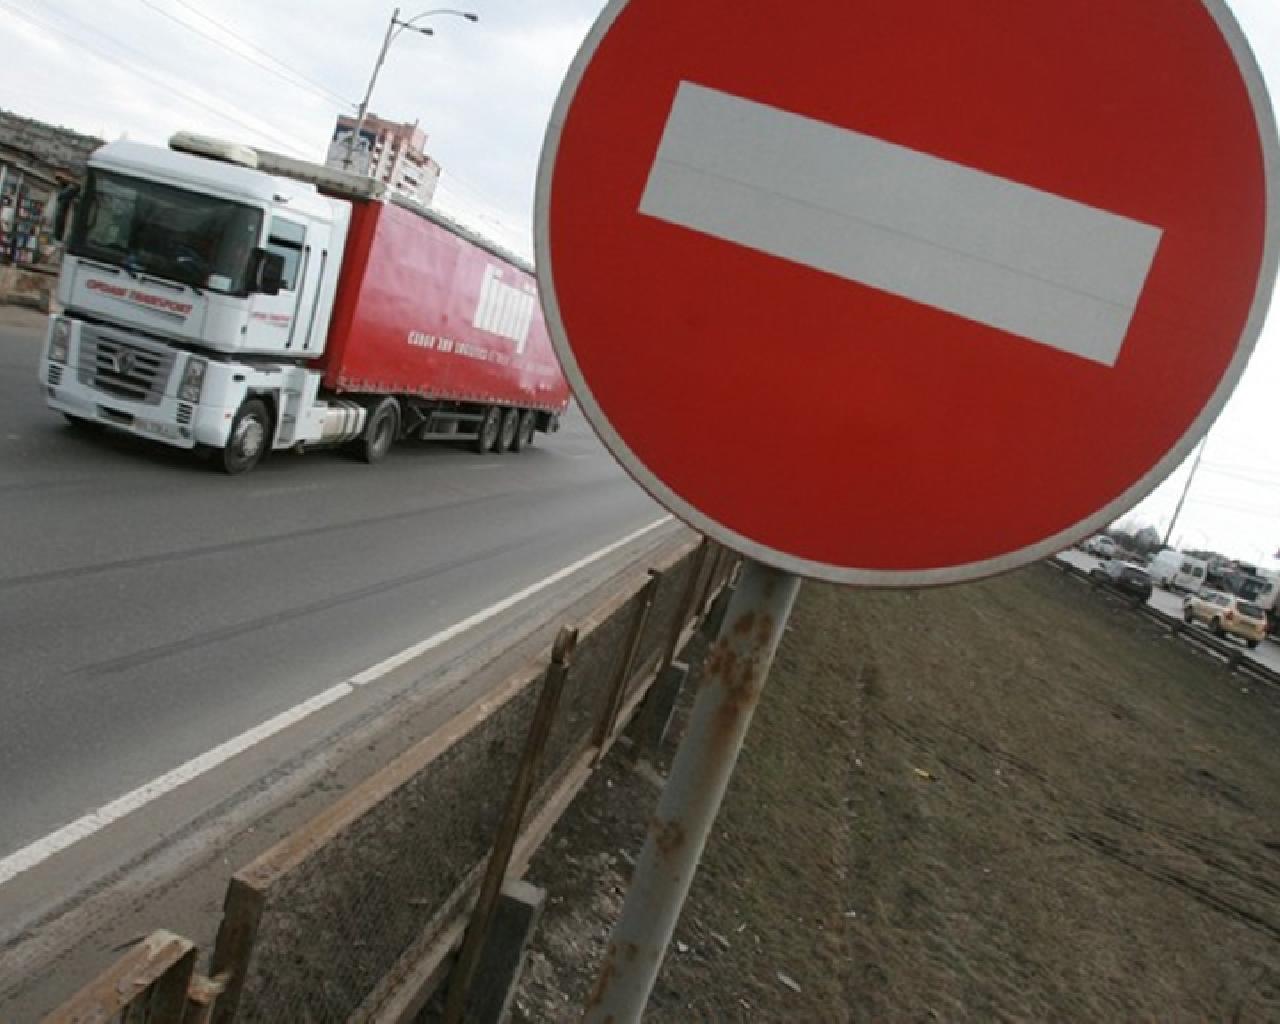 Список временного ограничения движения на федеральных дорогах России введен в действие